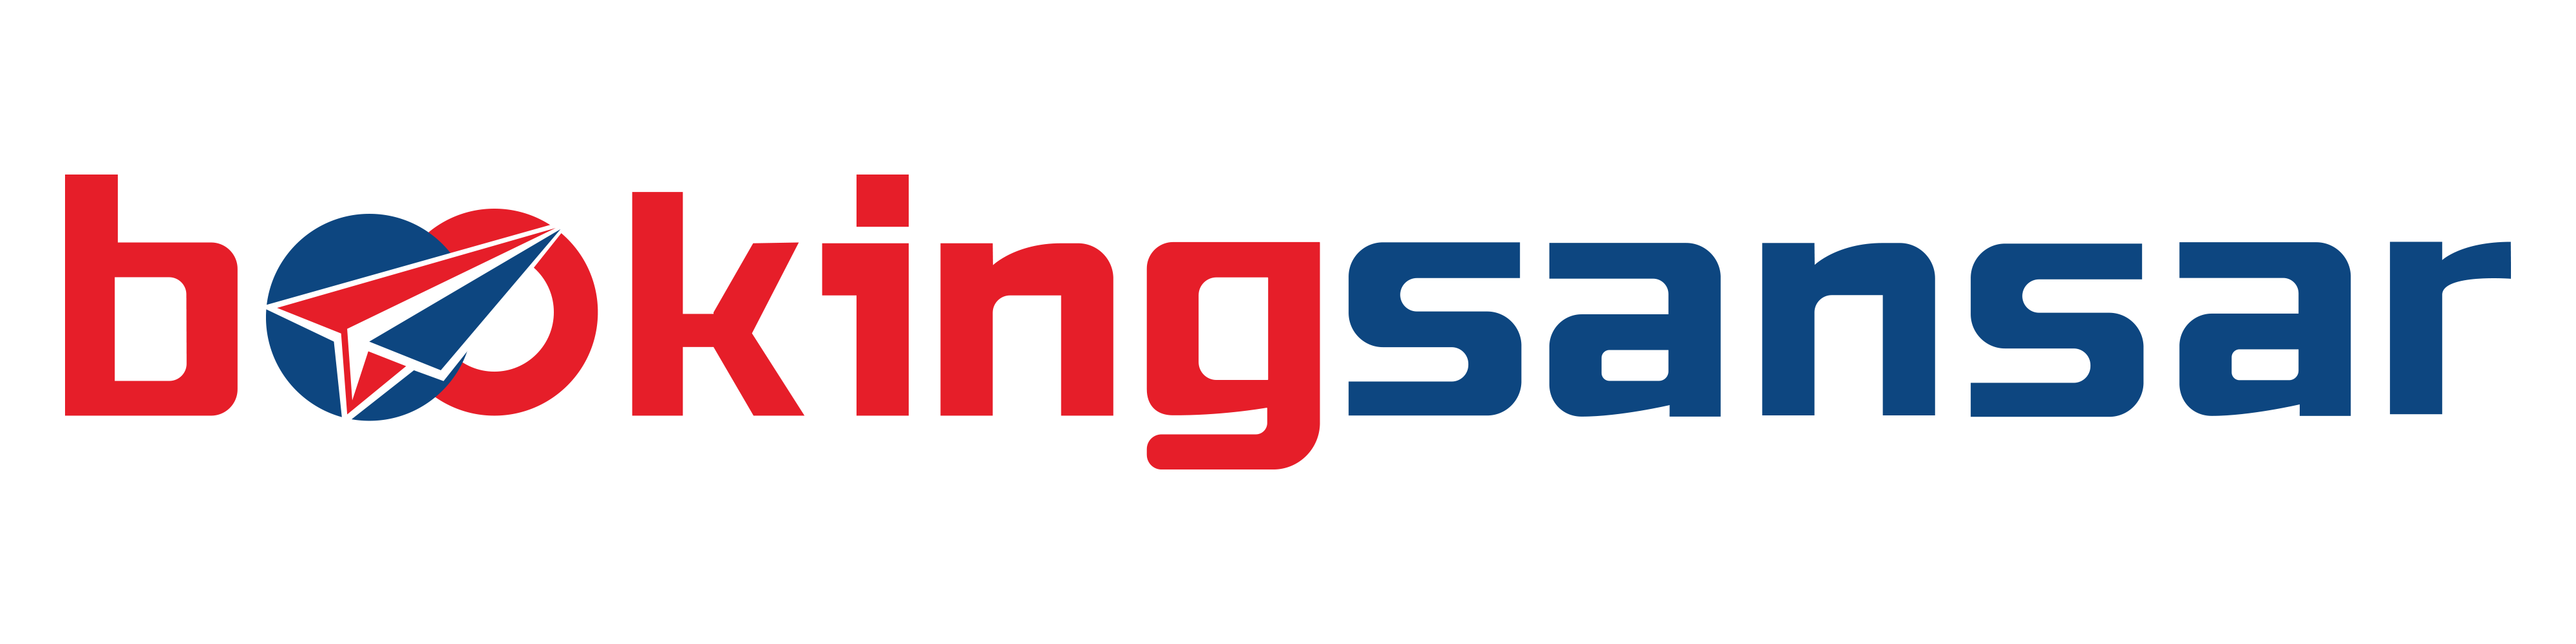 BookingSansar.com